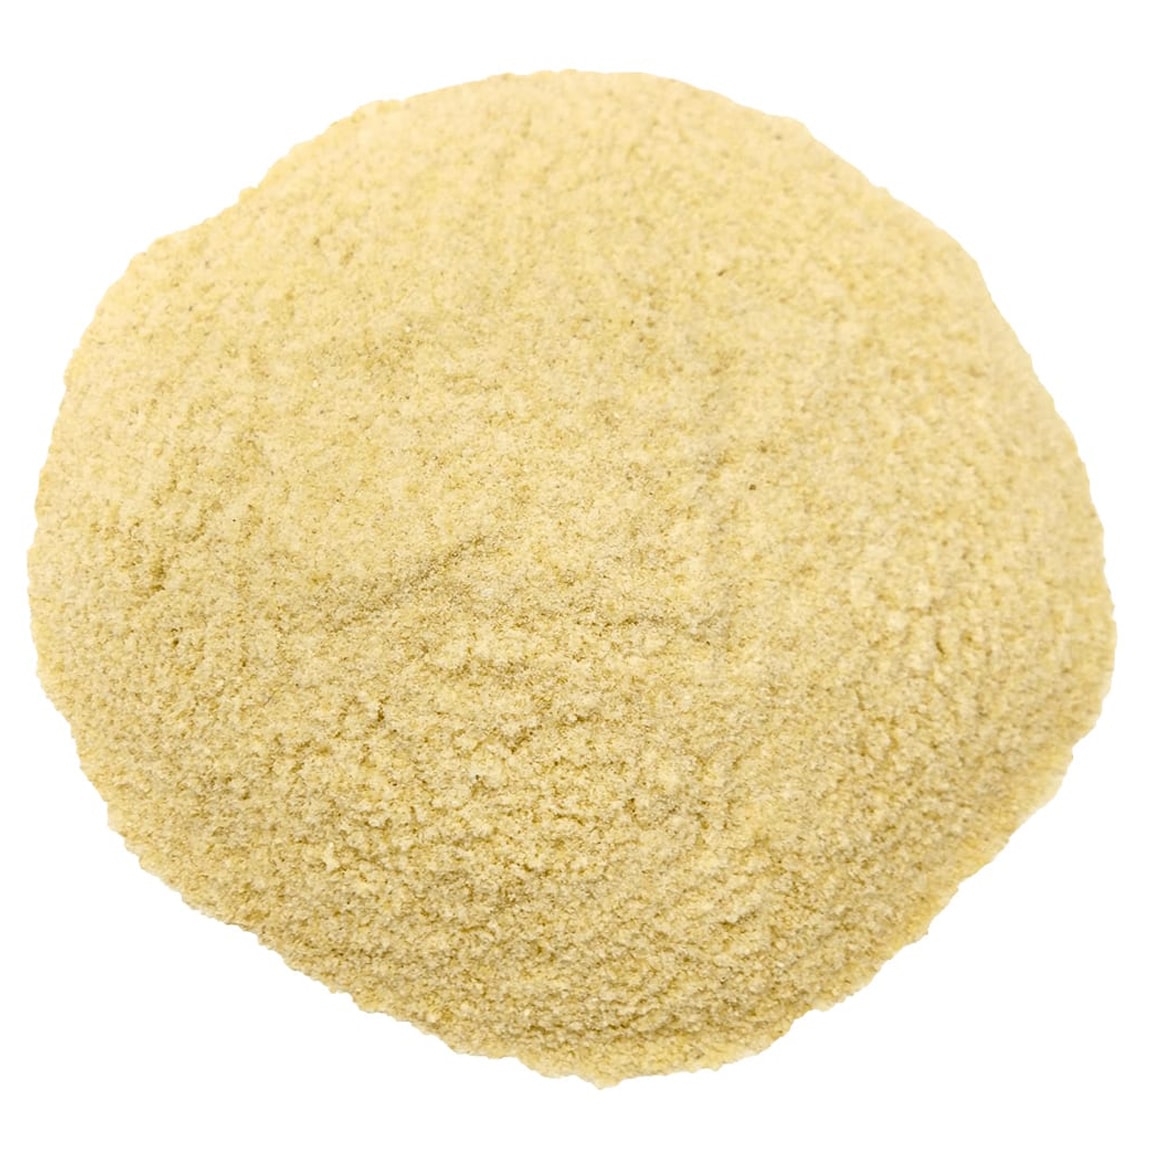 Organic KAMUT Khorasan Wheat Flour